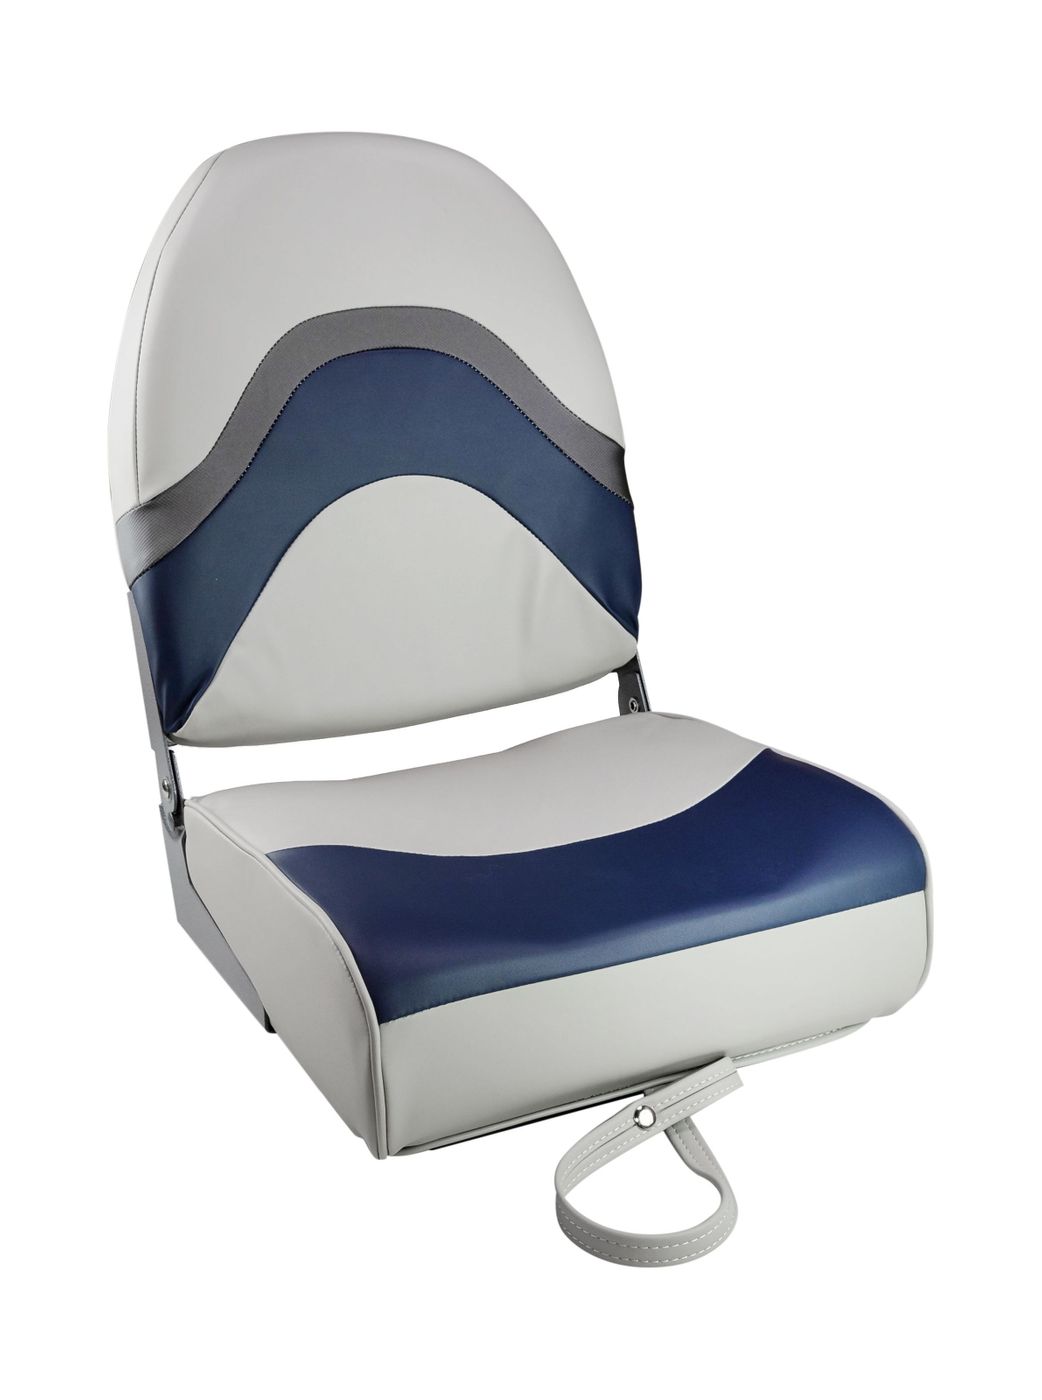 Кресло складное мягкое PREMIUM WAVE, цвет серый/синий 1062031 кресло мягкое складное обивка винил синий marine rocket 75103b mr